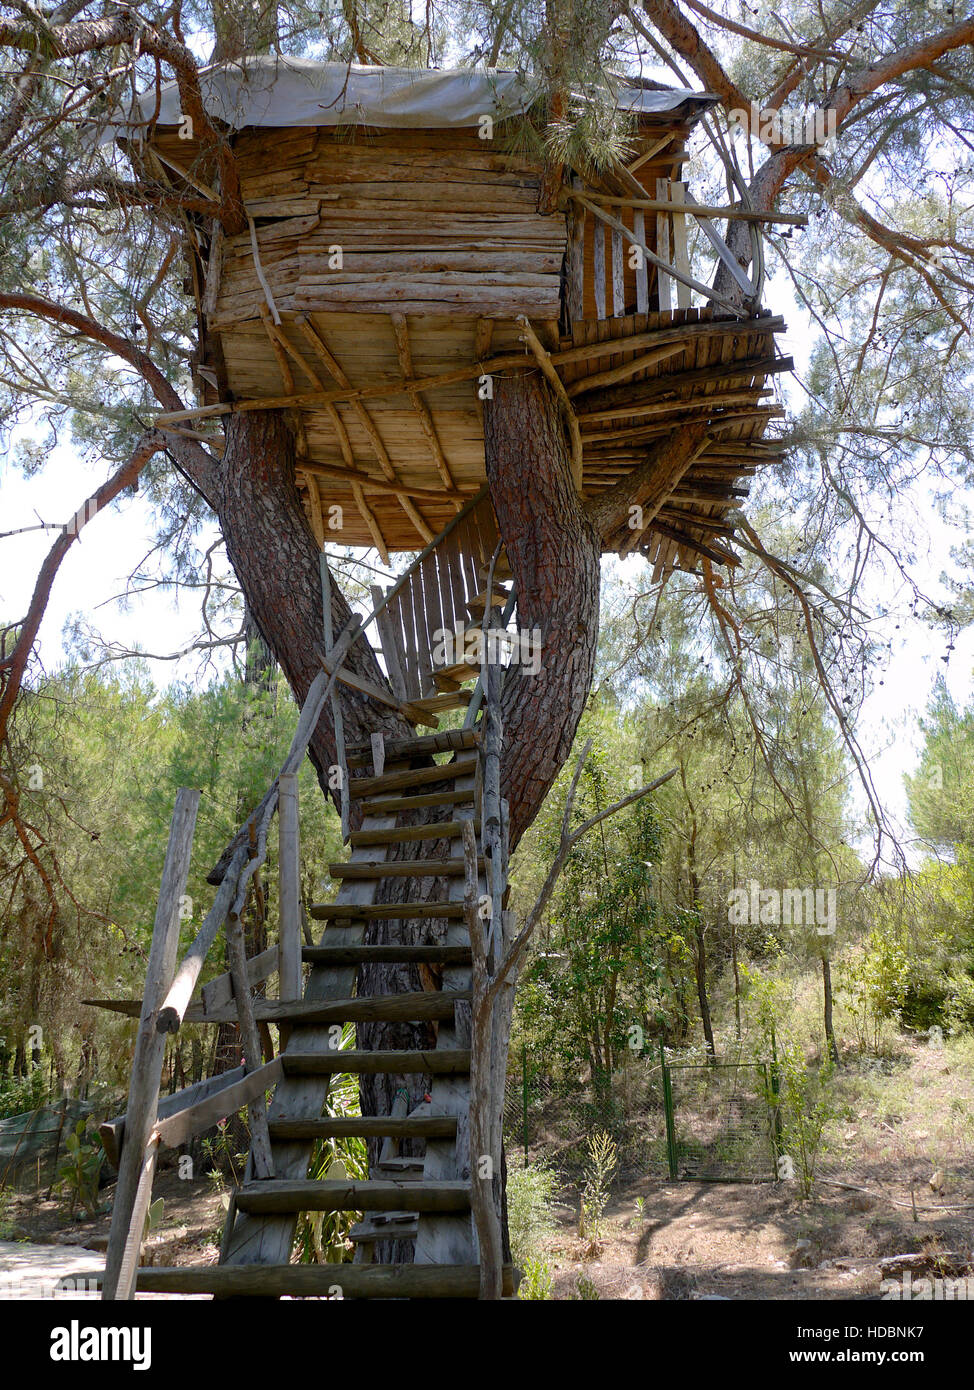 Tree house at Olympos, Turkey Stock Photo